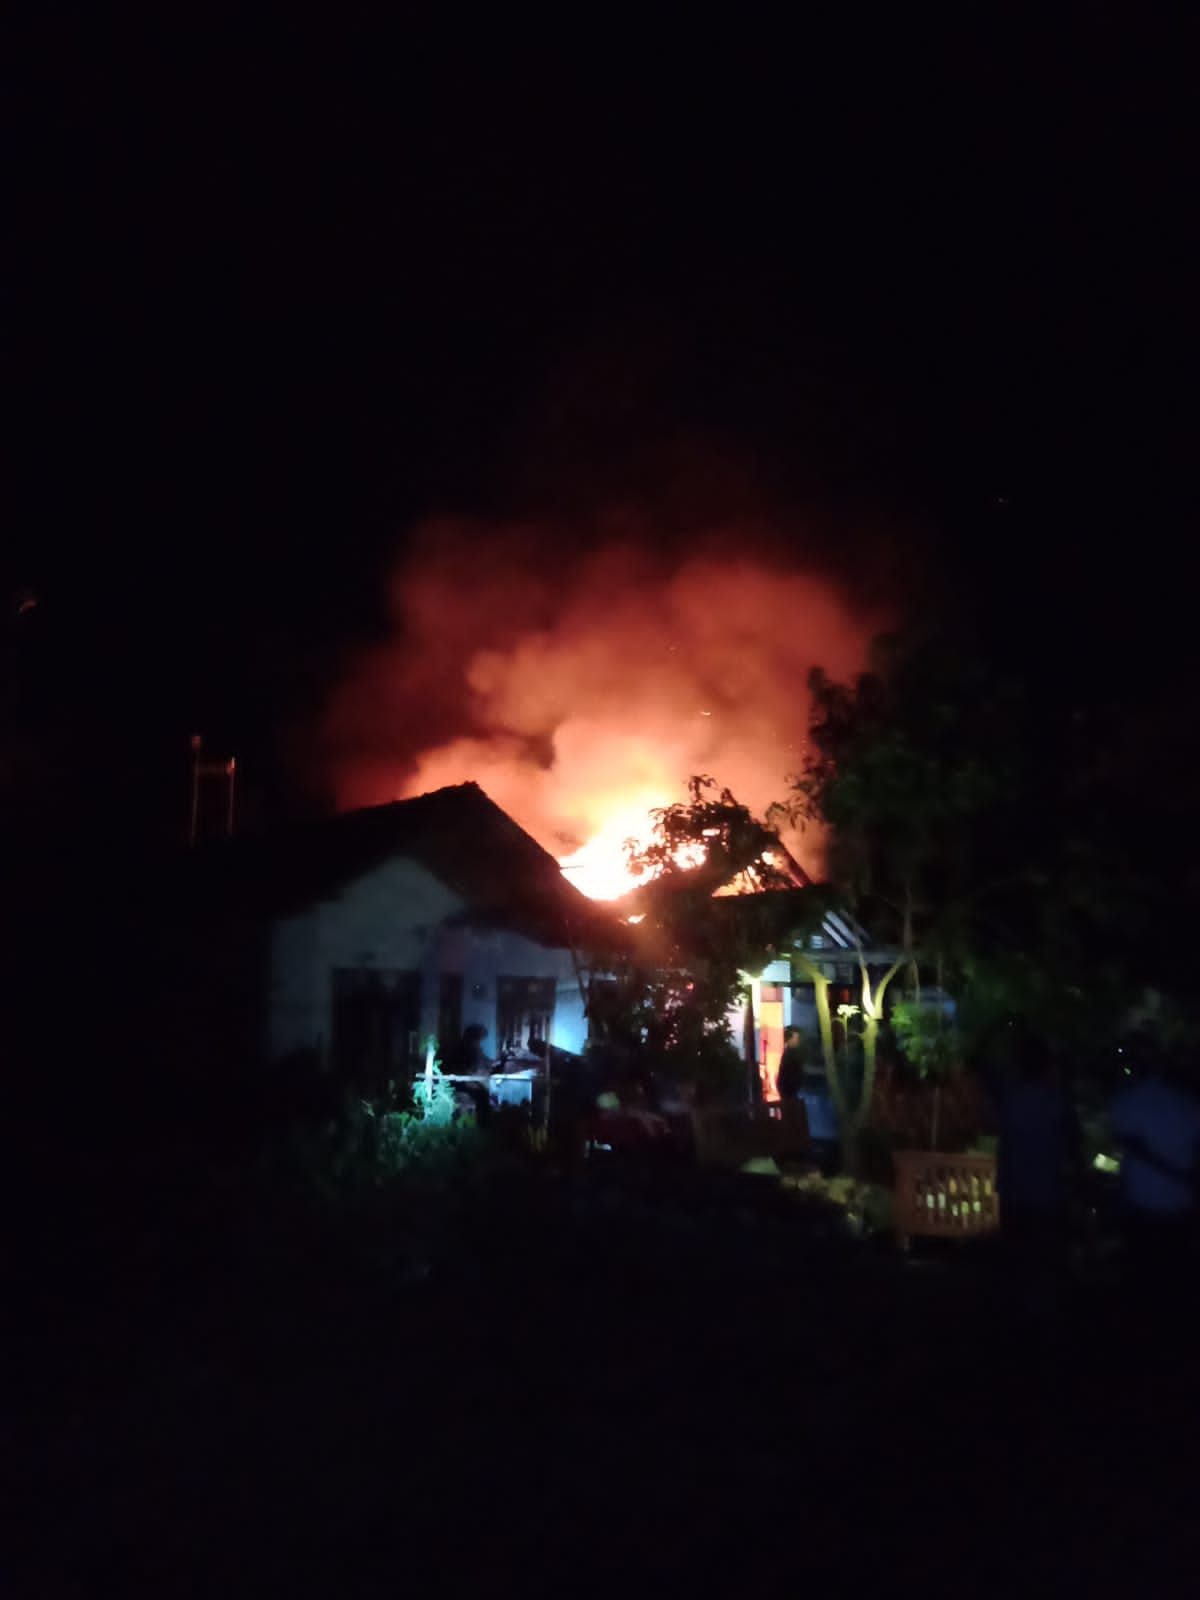 Musibah kebakaran terjadi pada pukul 20.00 wib di rumah Siti Umroh (50) warga desa Cibendung Kecamatan Banjarharjo kabupaten Brebes